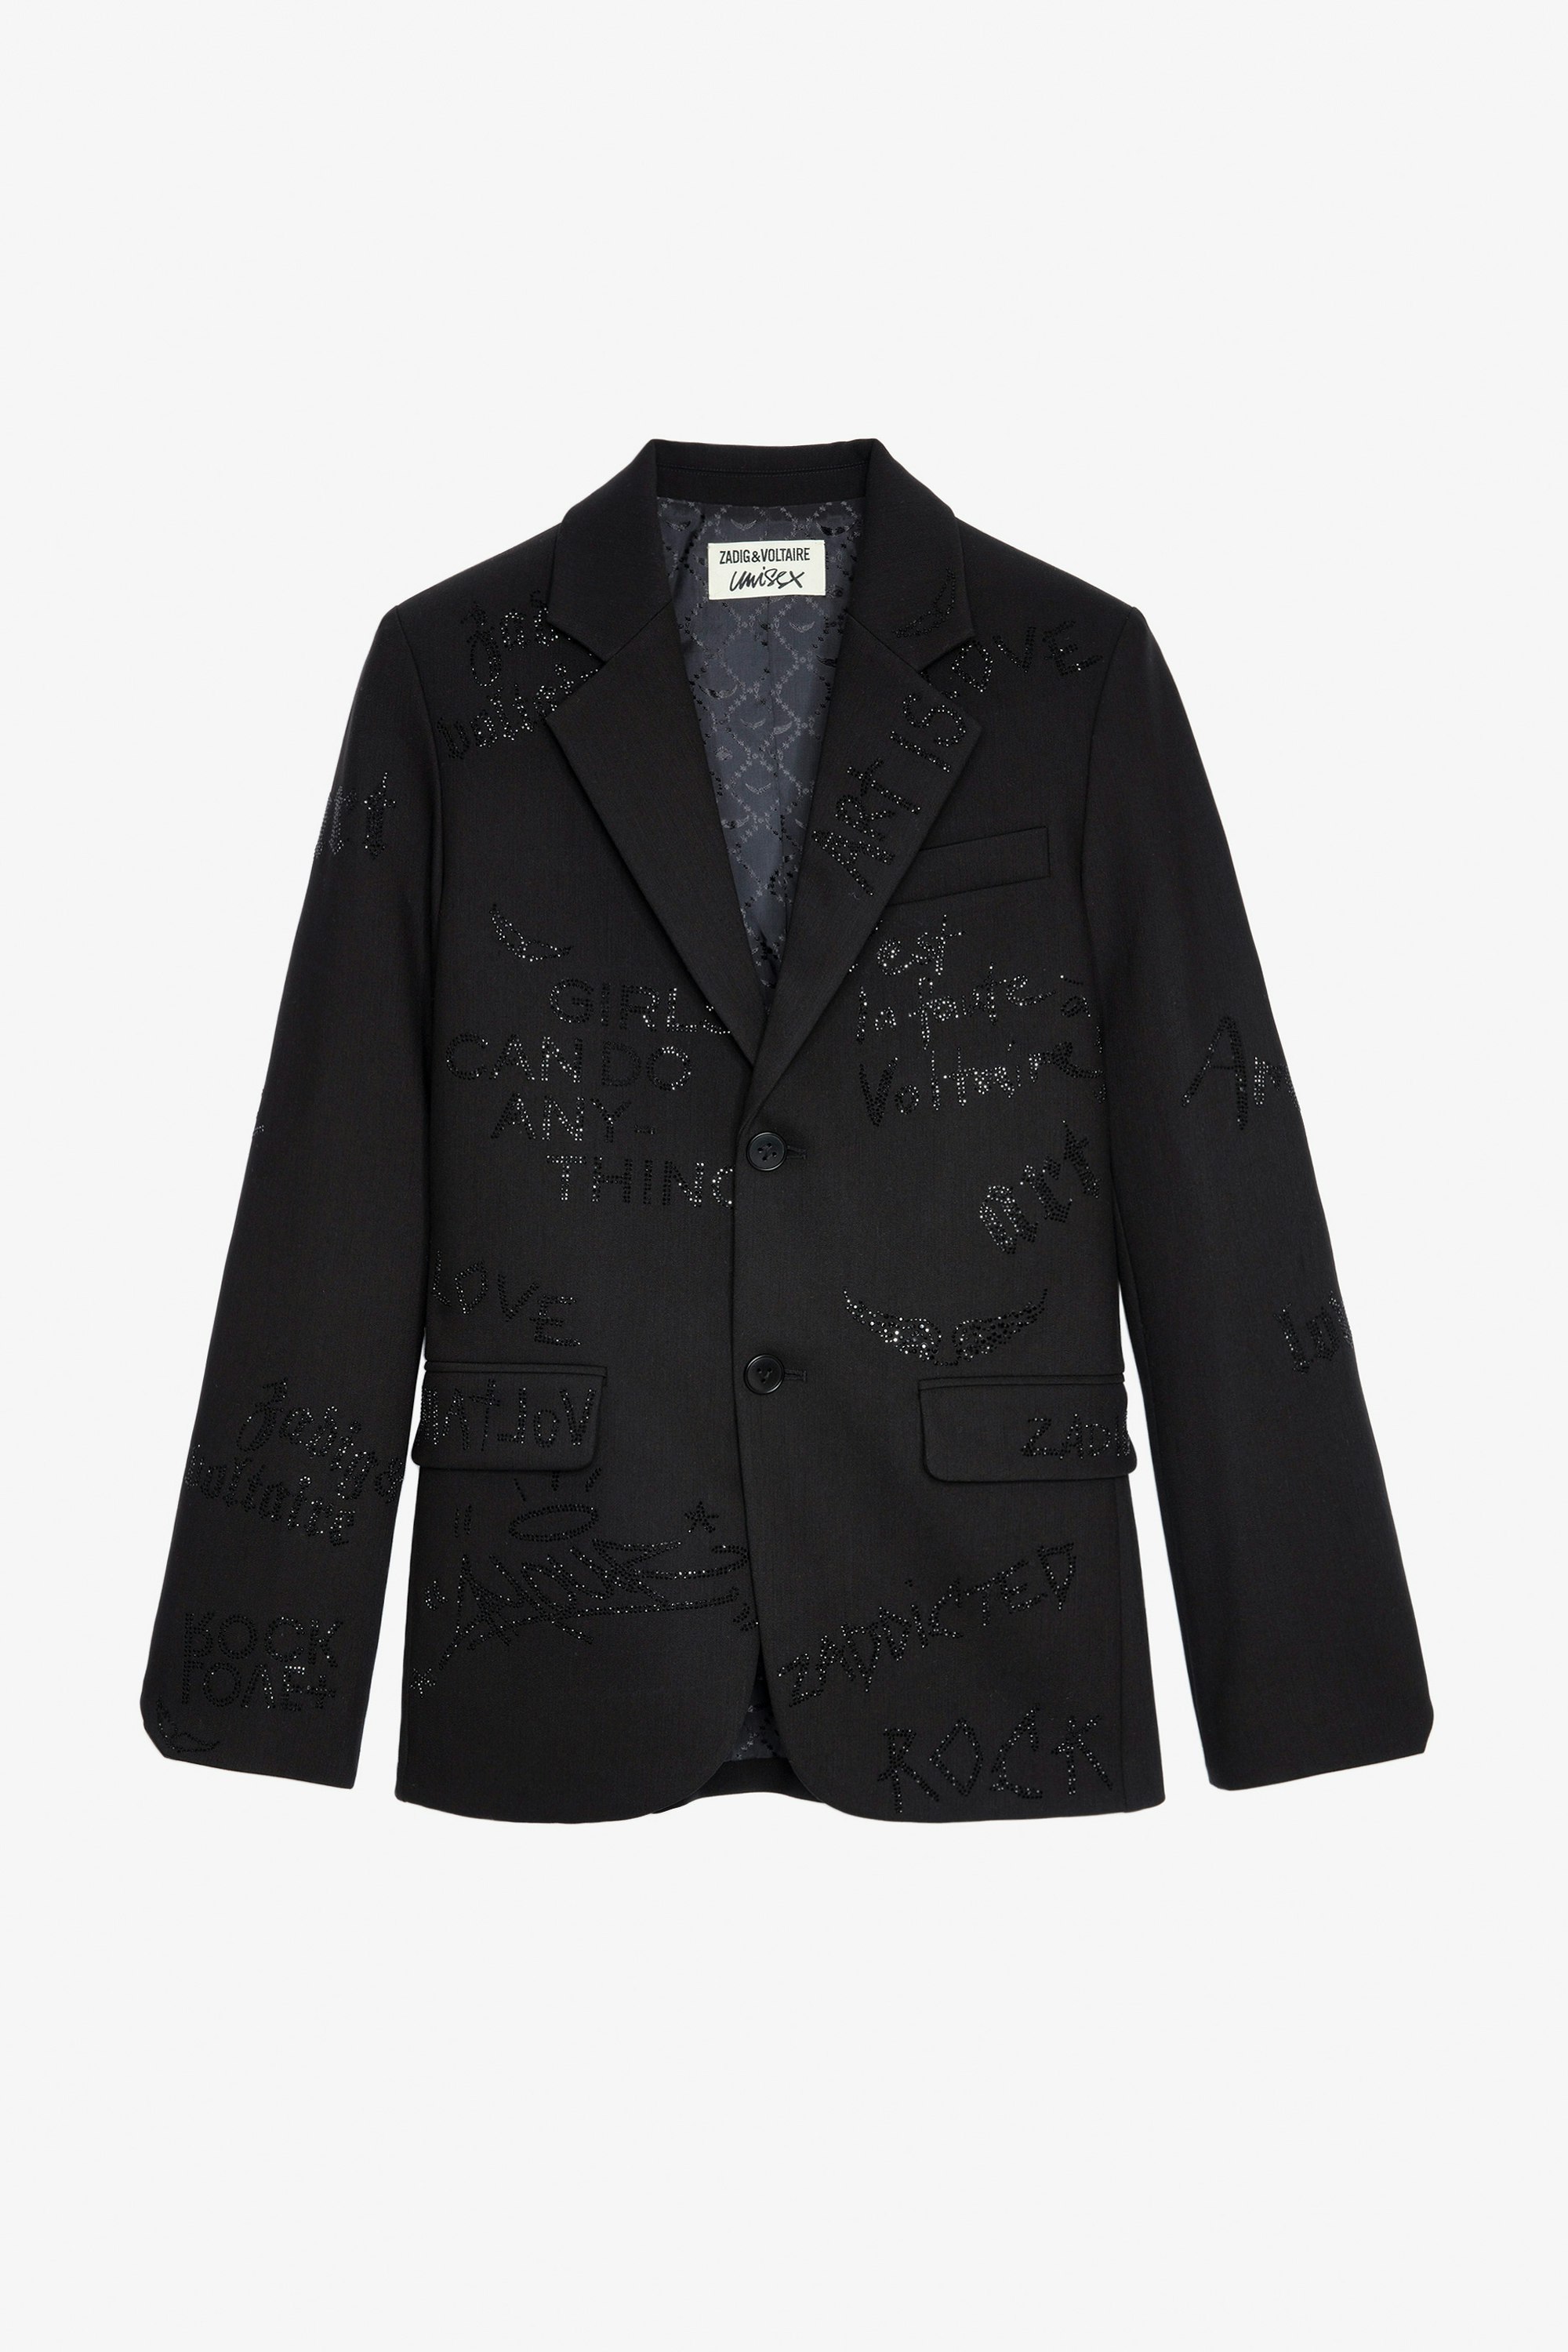 Blazer Vanille Strass - Giacca blazer nera decorata con manifesto in strass.